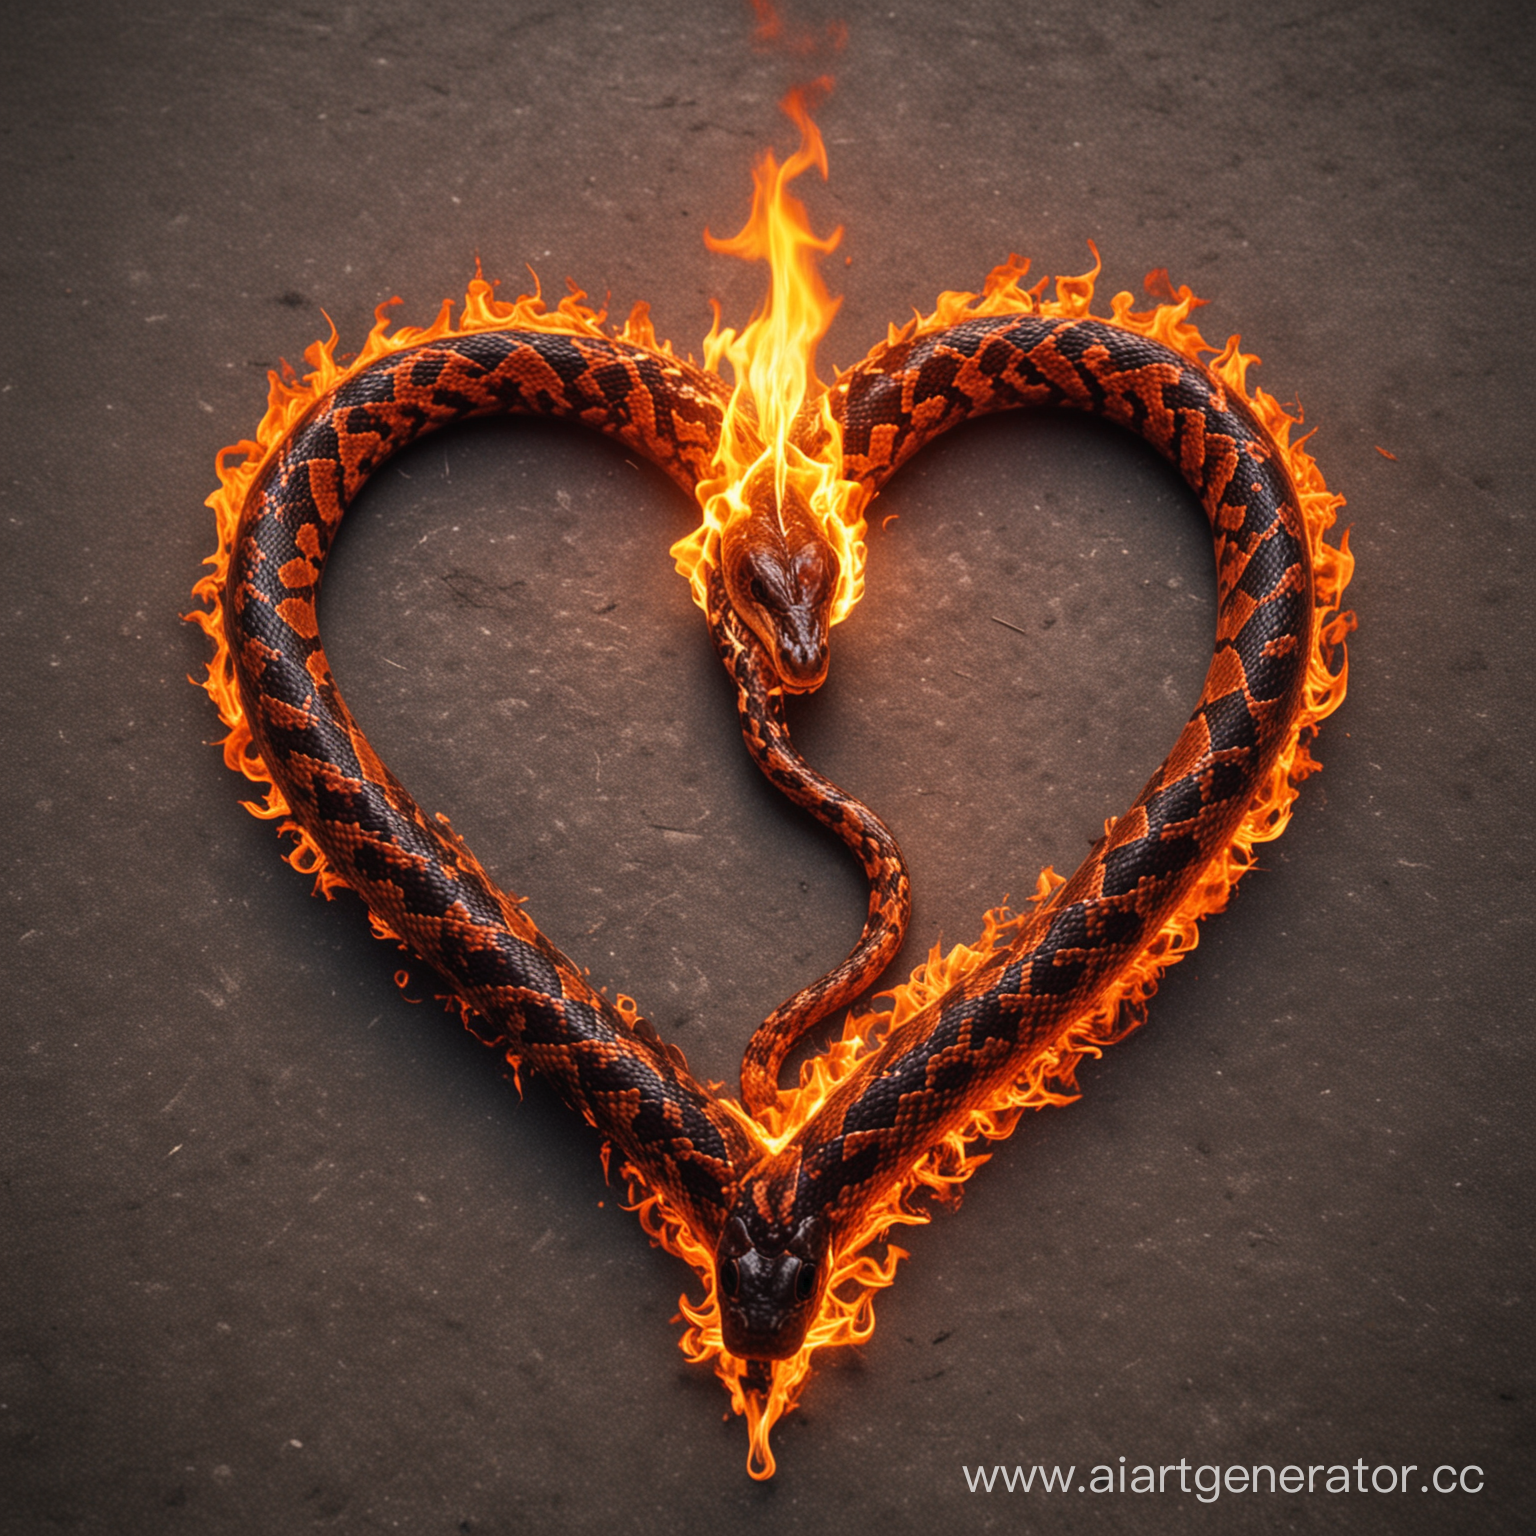 Змея горящая пламенем в форме сердца